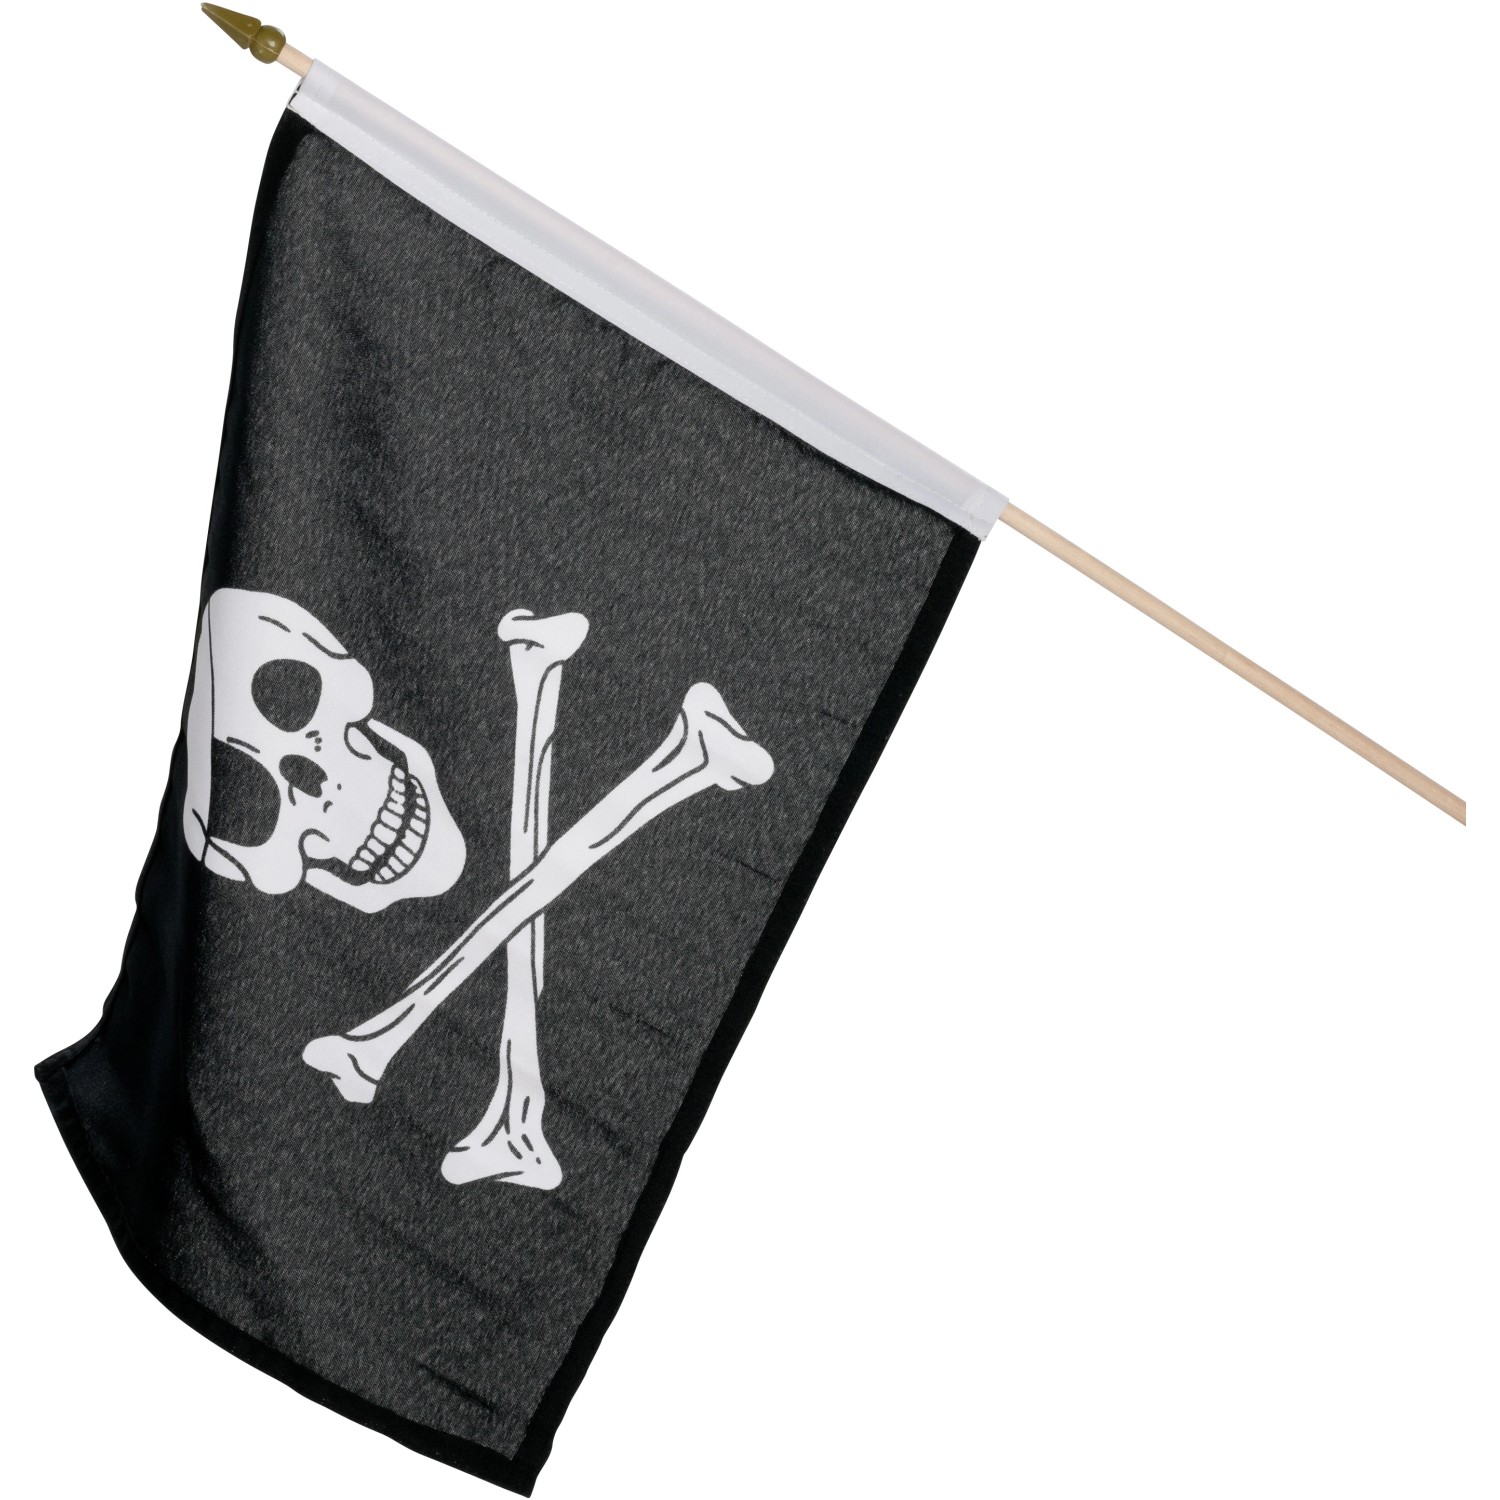 Stiftedose Piratenflagge aus Metall ☠ mit Einlage • zum Sonderpreis